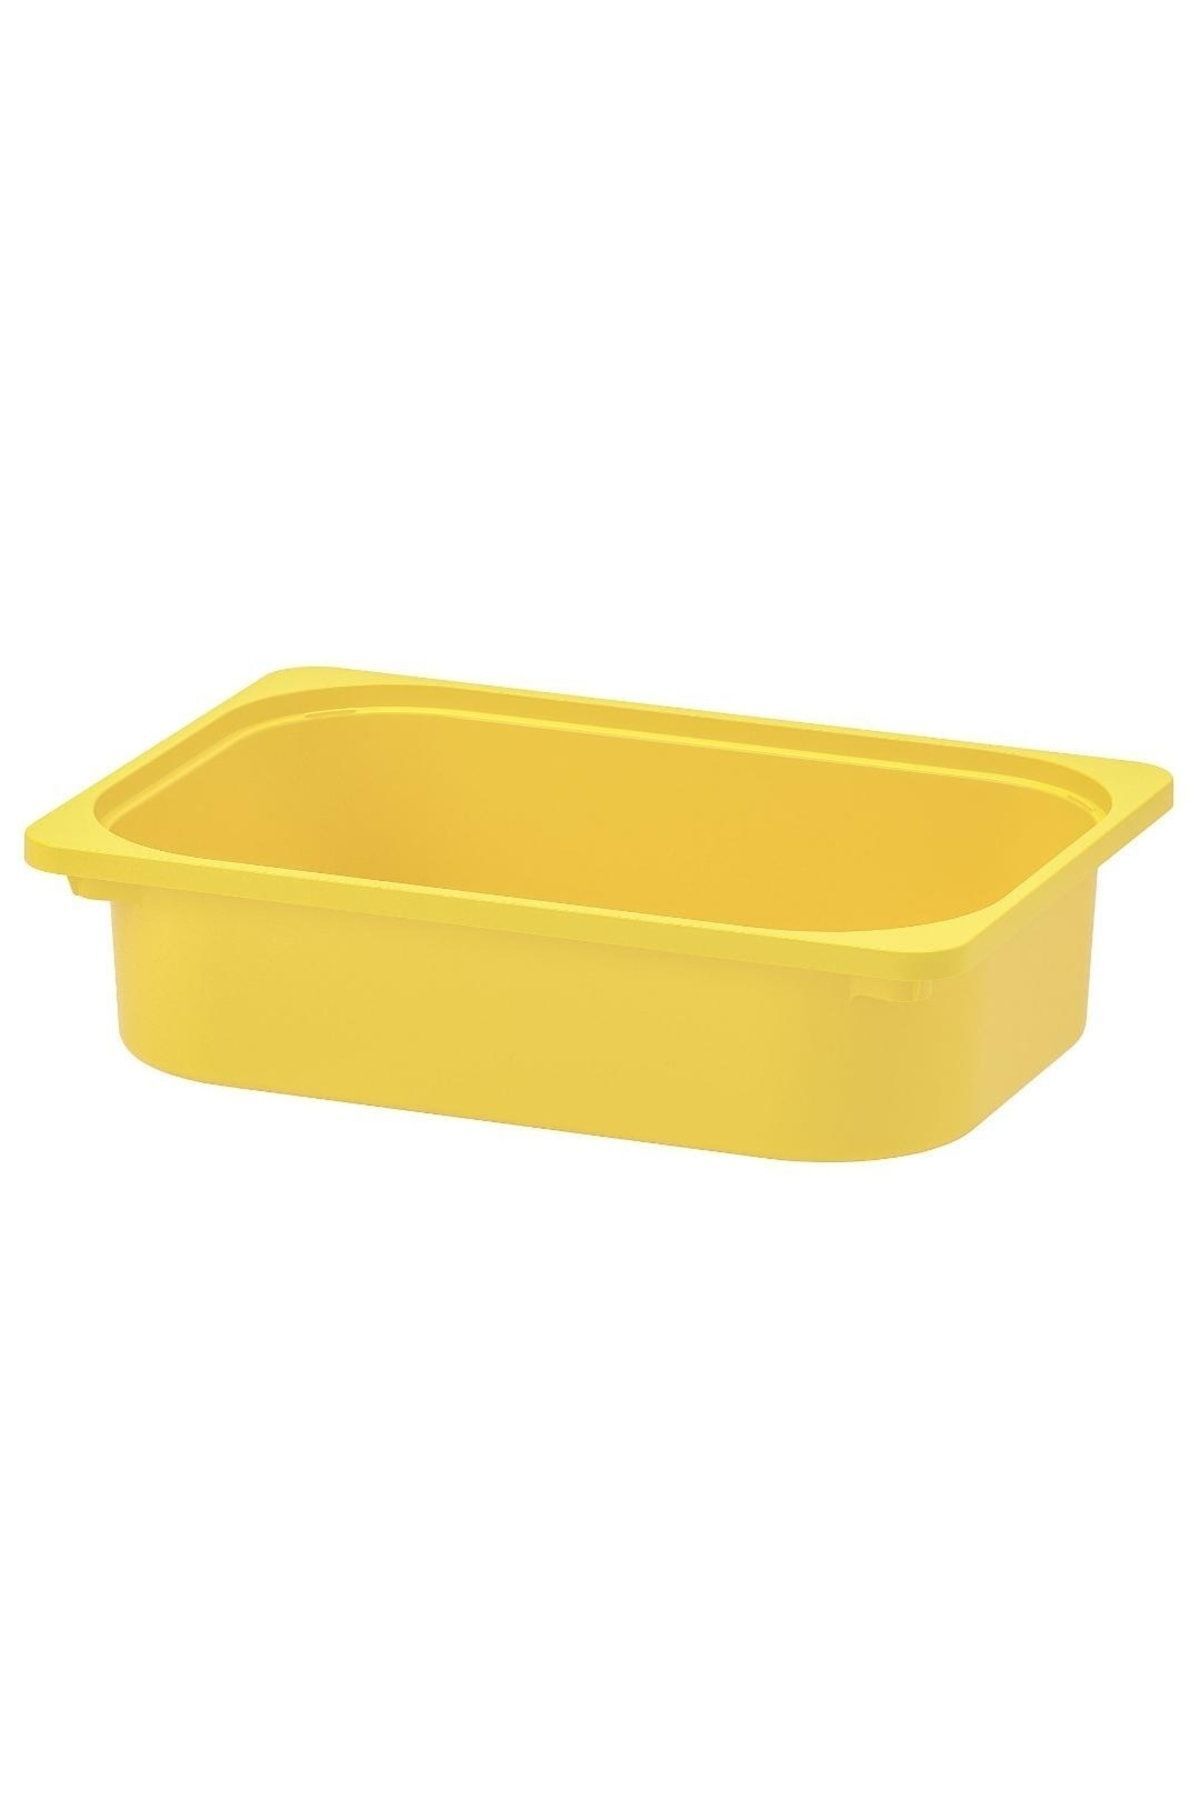 IKEA Trofast Saklama Kutusu Sarı Düzenleme Kutusu